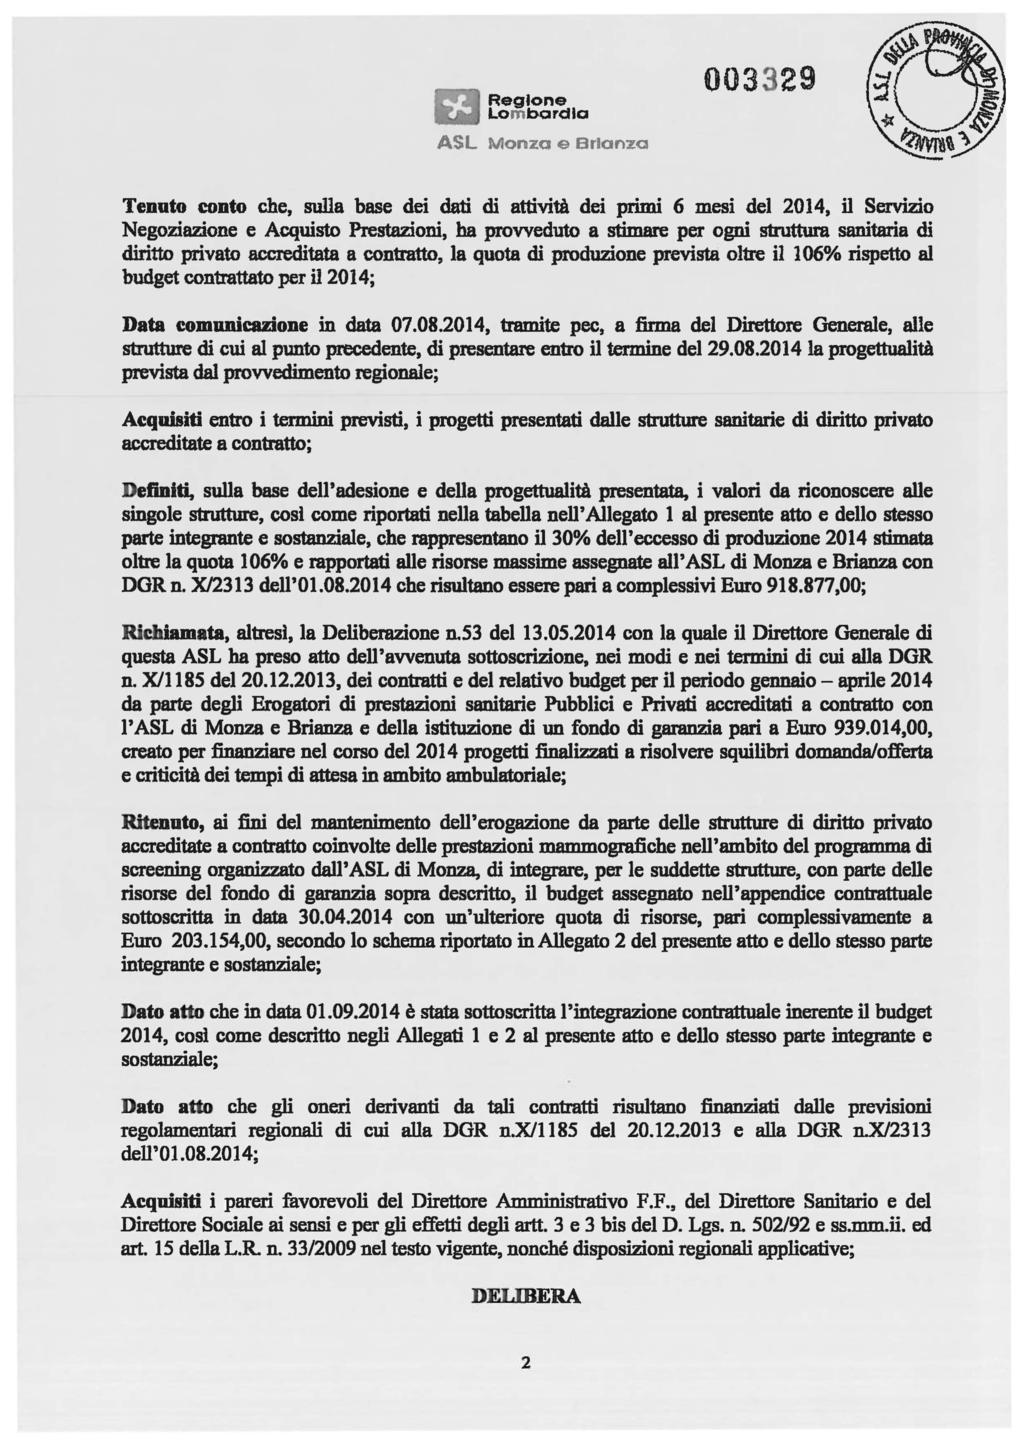 lom bardia ASL Monza El Brianza 003329 Tenuto eonto che, sulla base dei dati di attività dei primi 6 mesi del 2014, il Servizio Negoziazione e Acquisto Prestazioni, ha provveduto a stimare per ogni